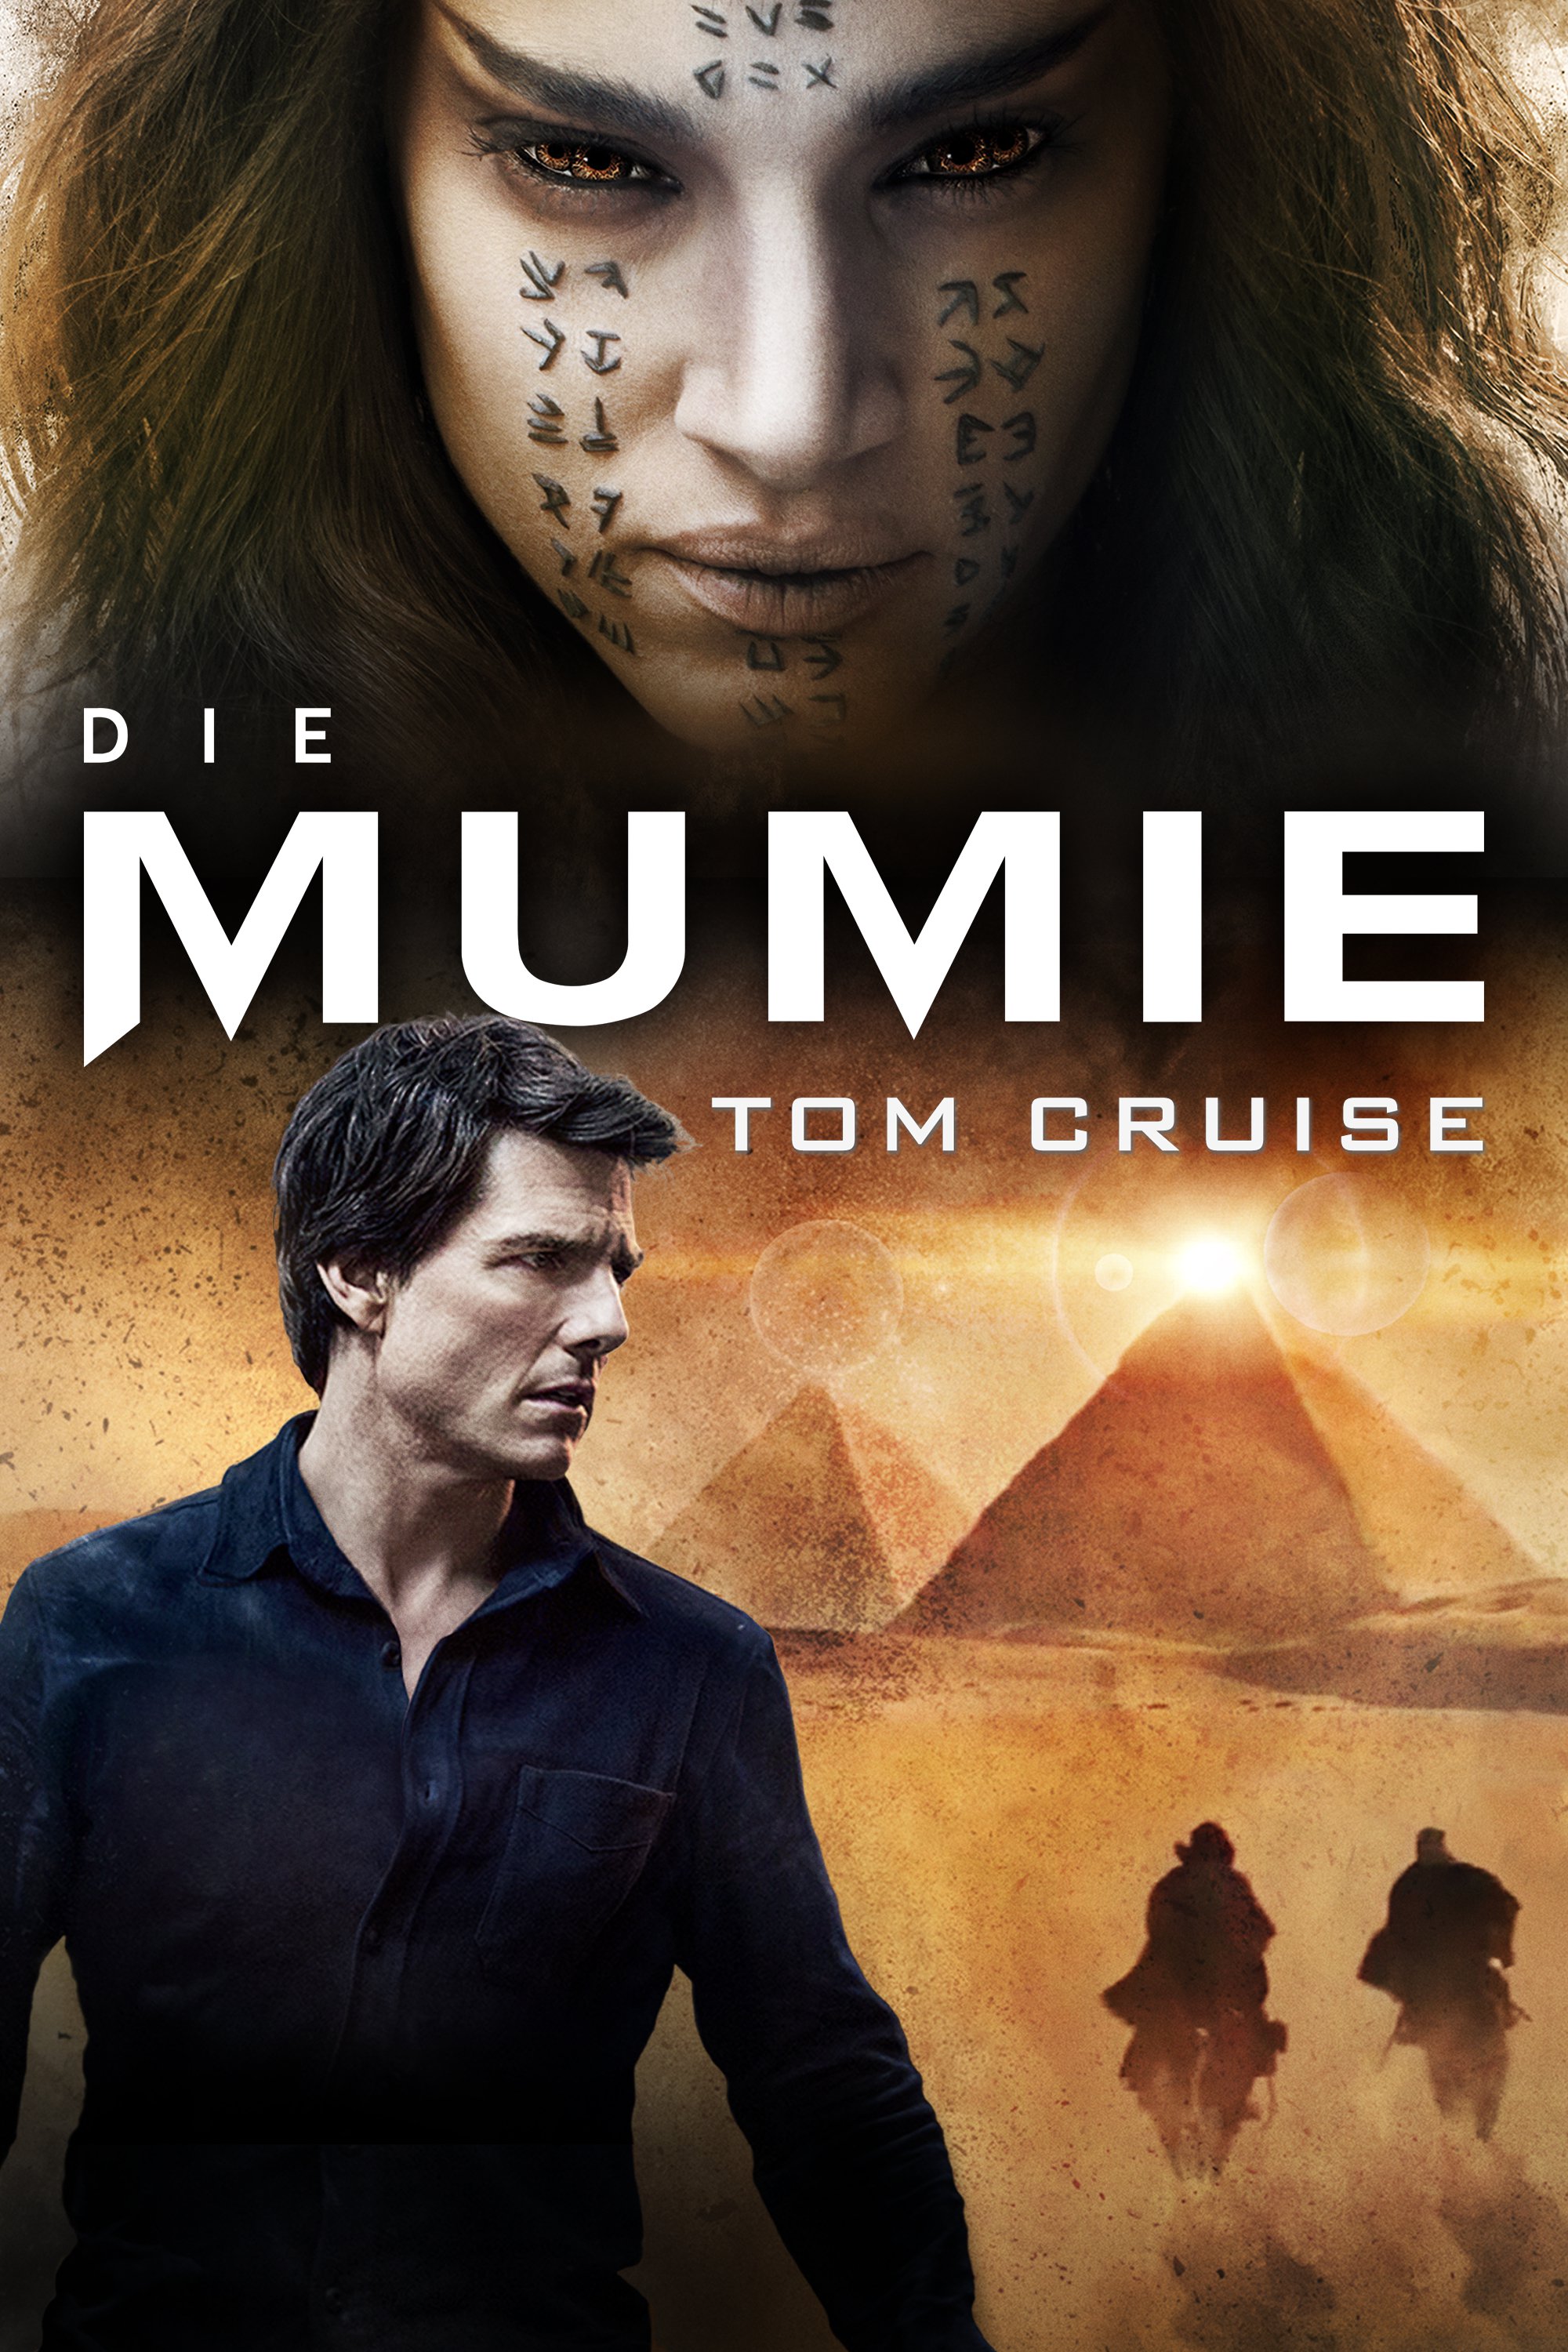 Plakat von "Die Mumie"